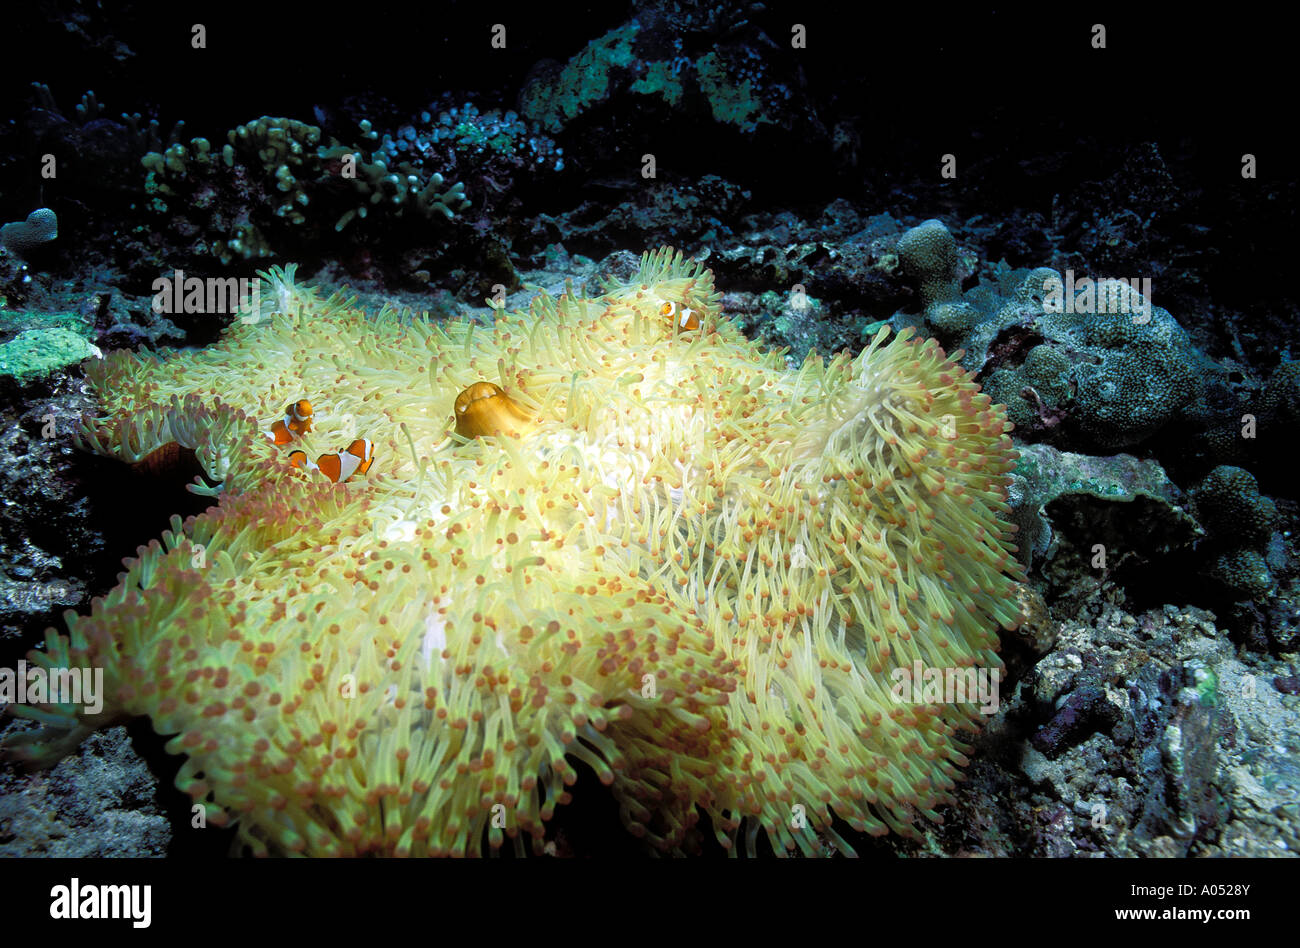 Gebleicht herrliche Seeanemone, Heteractis Magnifica, aufgrund von warmen Wasser von El Nino gebracht. Borneo Malaysia. Stockfoto